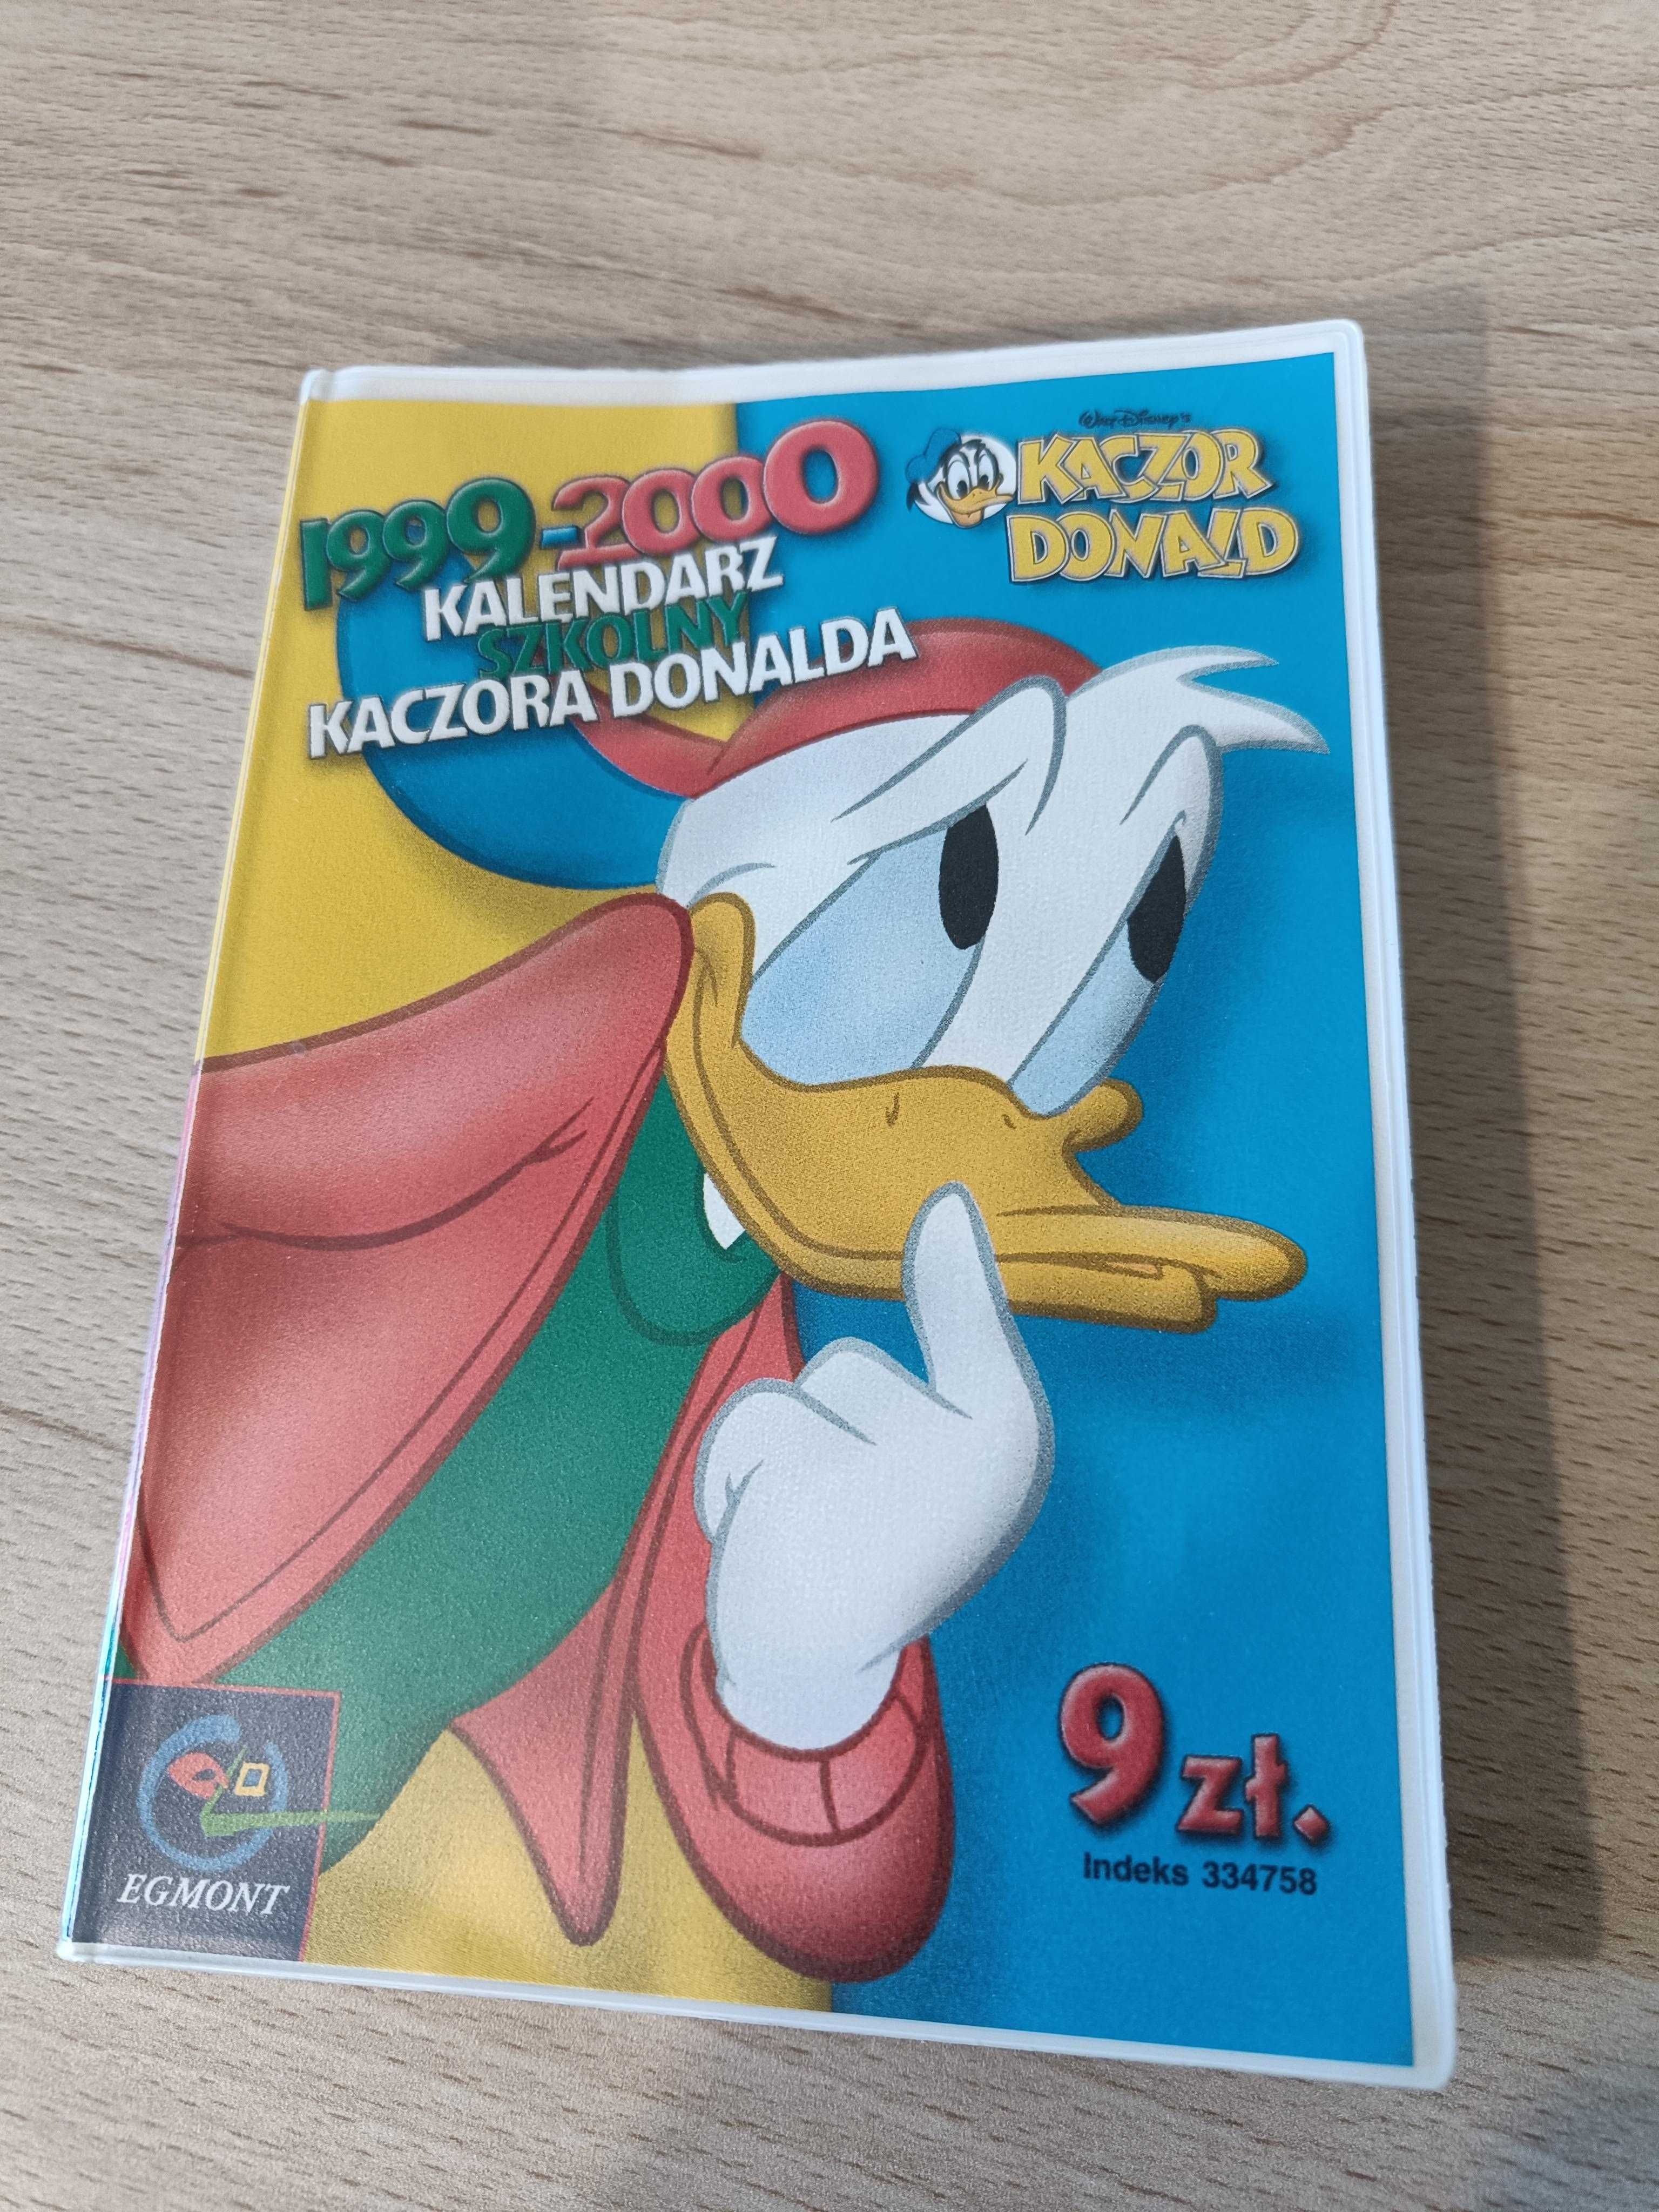 Kalendarz szkolny Kaczora Donalda 1999 do 2000